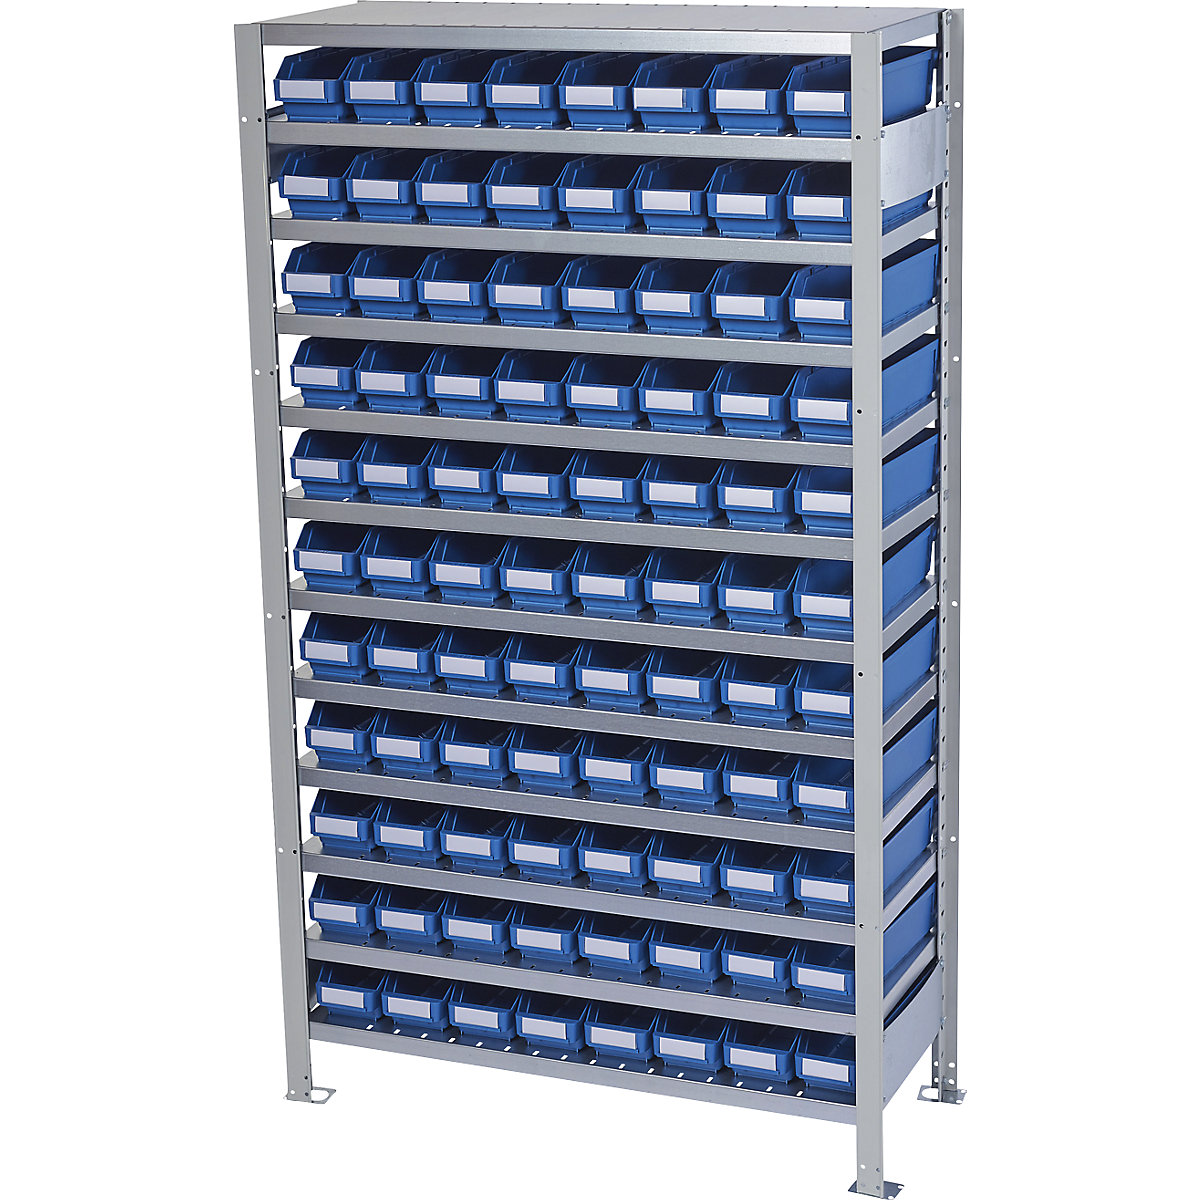 Összedugaszolós állvány dobozokkal – STEMO, állványmagasság 1790 mm, alapállvány, 400 mm mély, 88 kék doboz-30